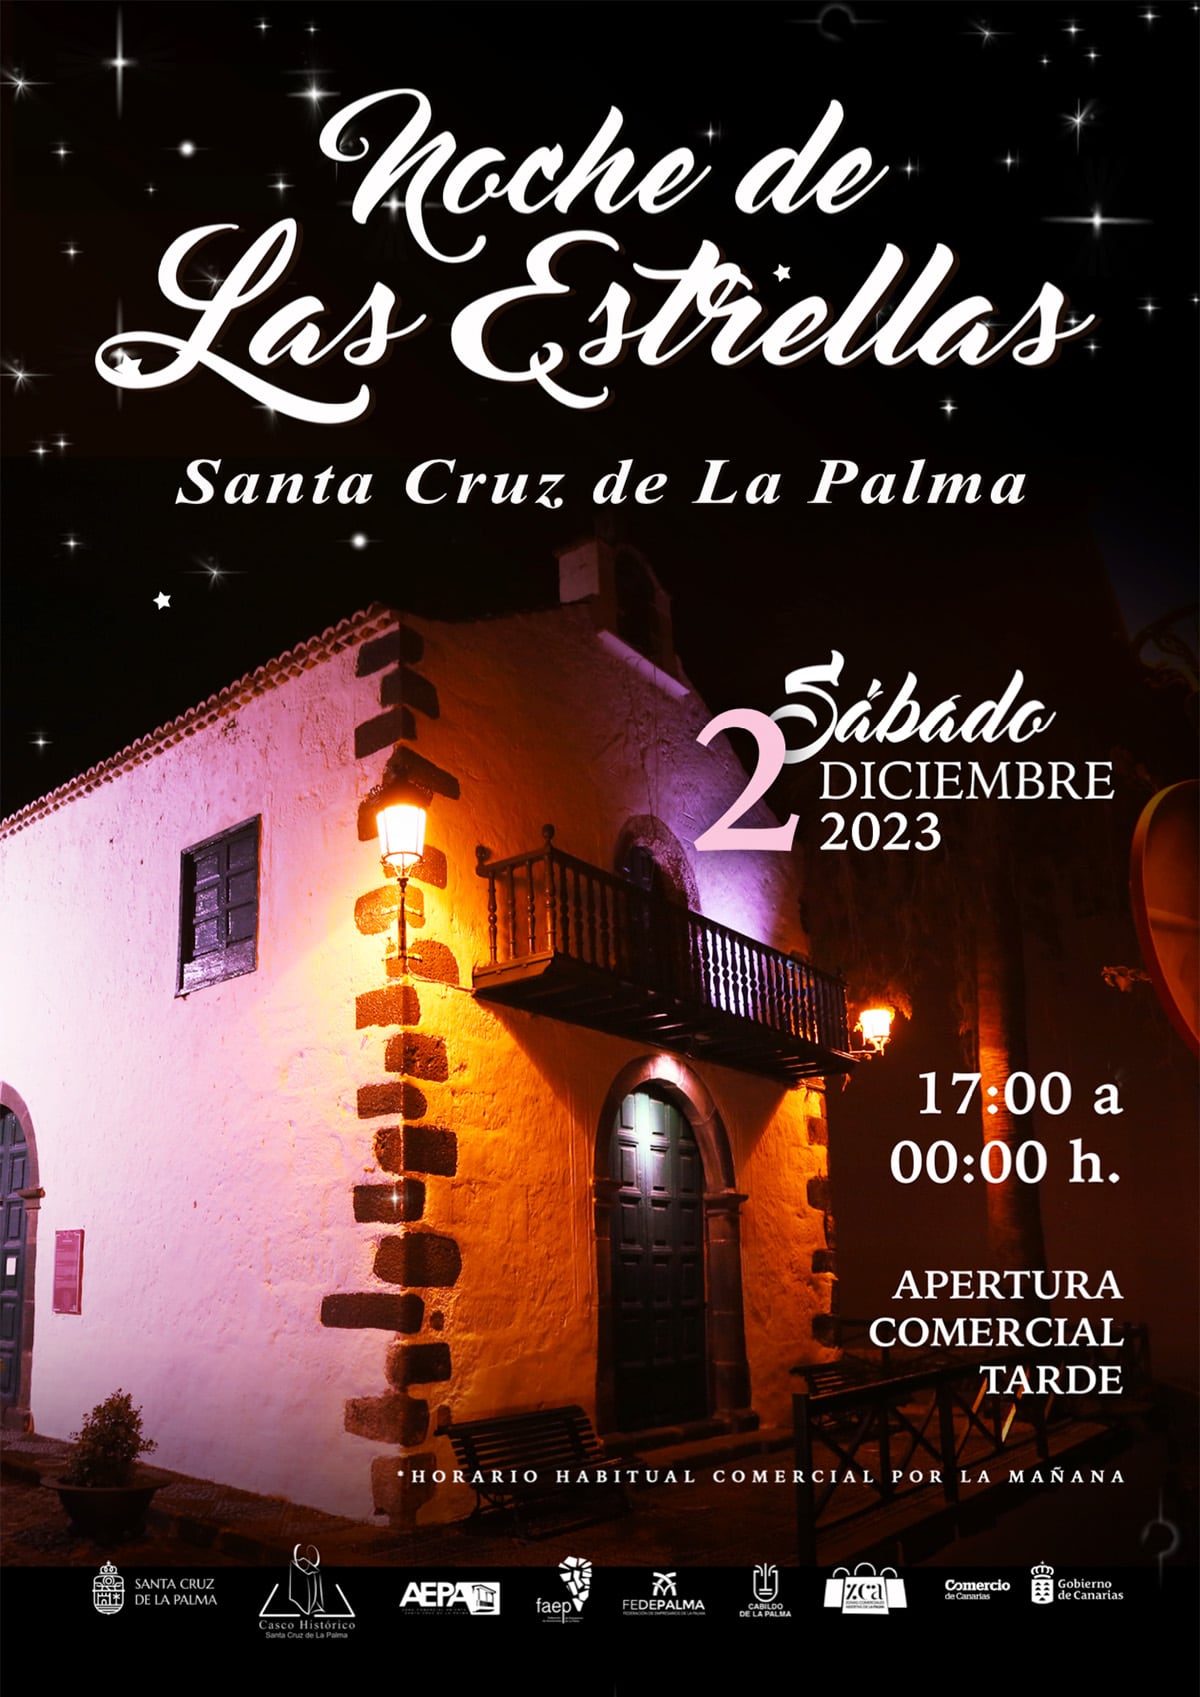 Santa Cruz de La Palma "volverá a brillar" en una nueva edición de 'La Noche de las Estrellas'